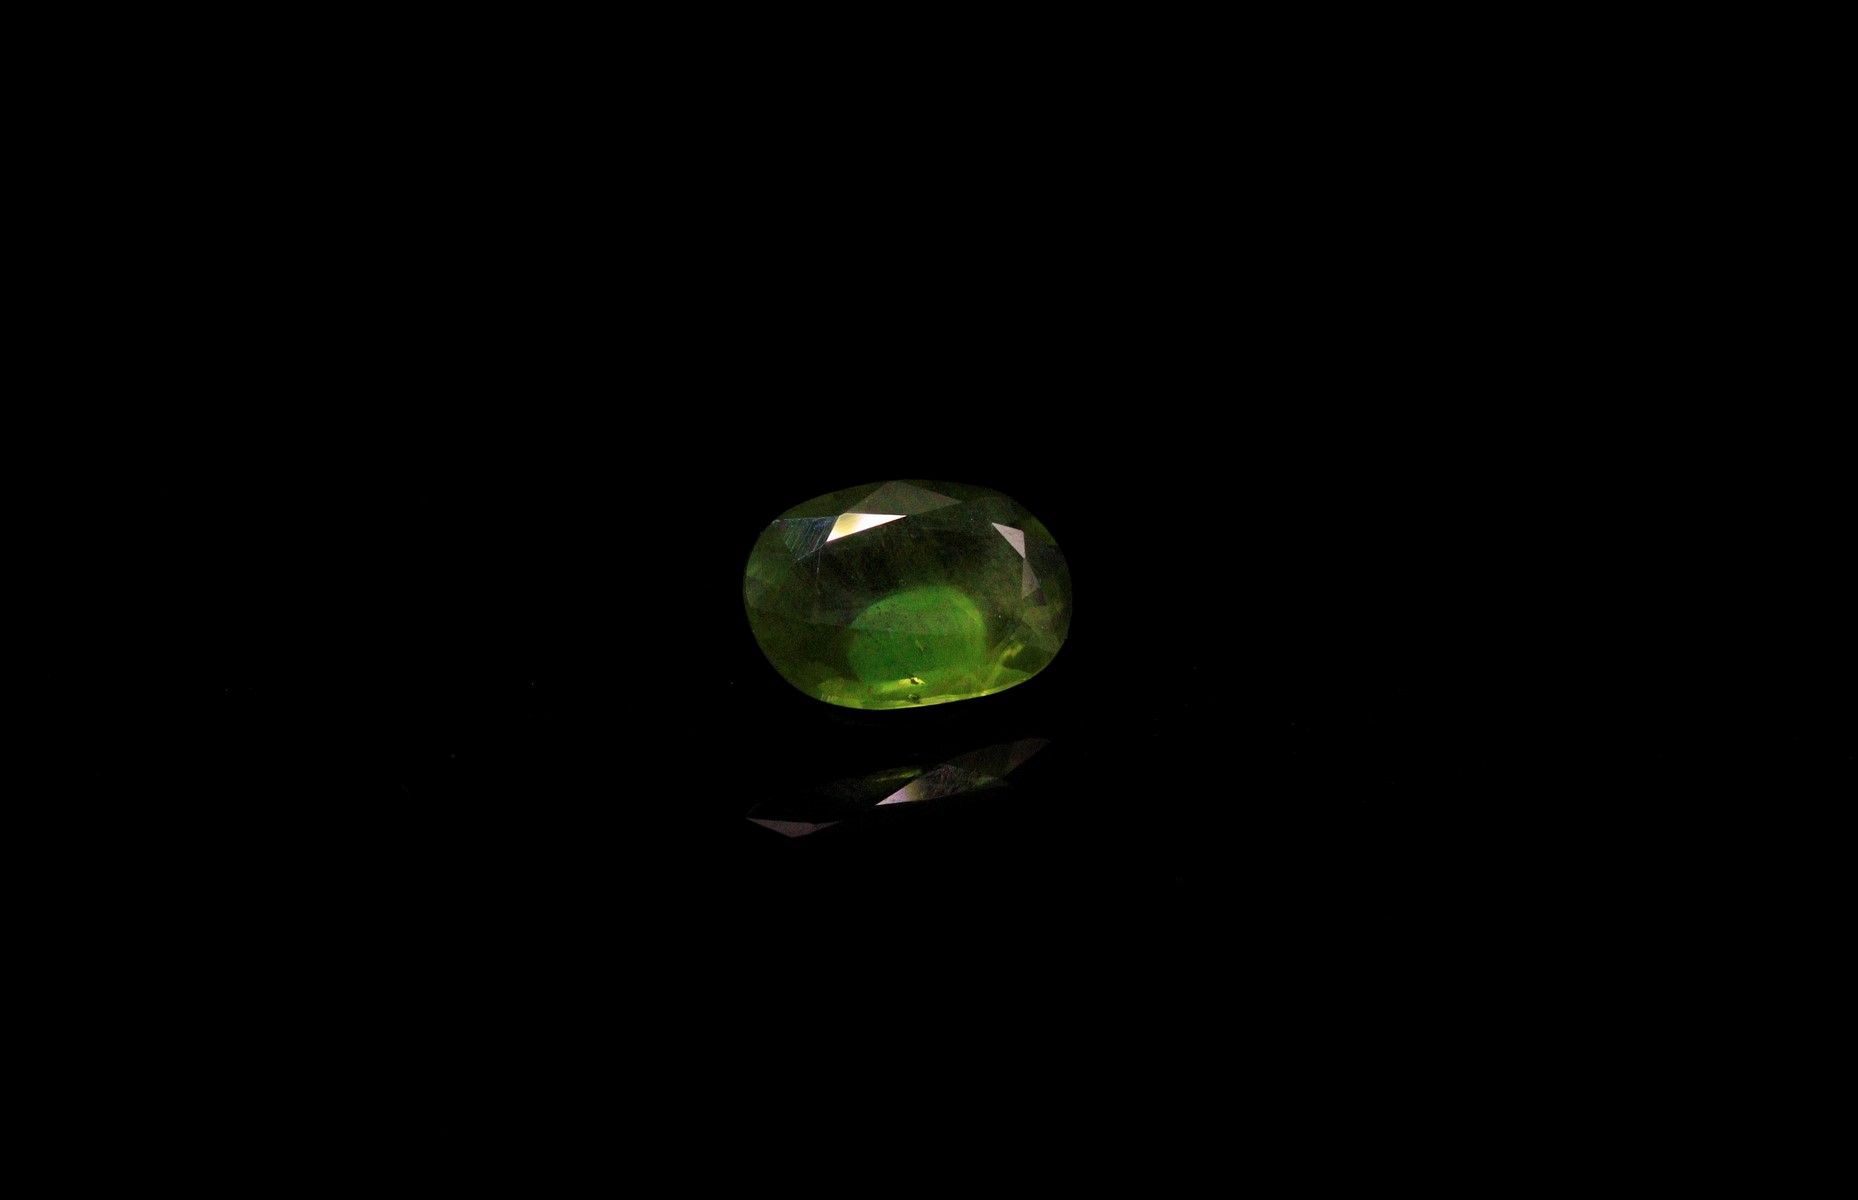 Null 椭圆形的绿色蓝宝石在纸上。 
重量 : 1.69克拉。 
尺寸 : 9.6毫米 x 5.2毫米